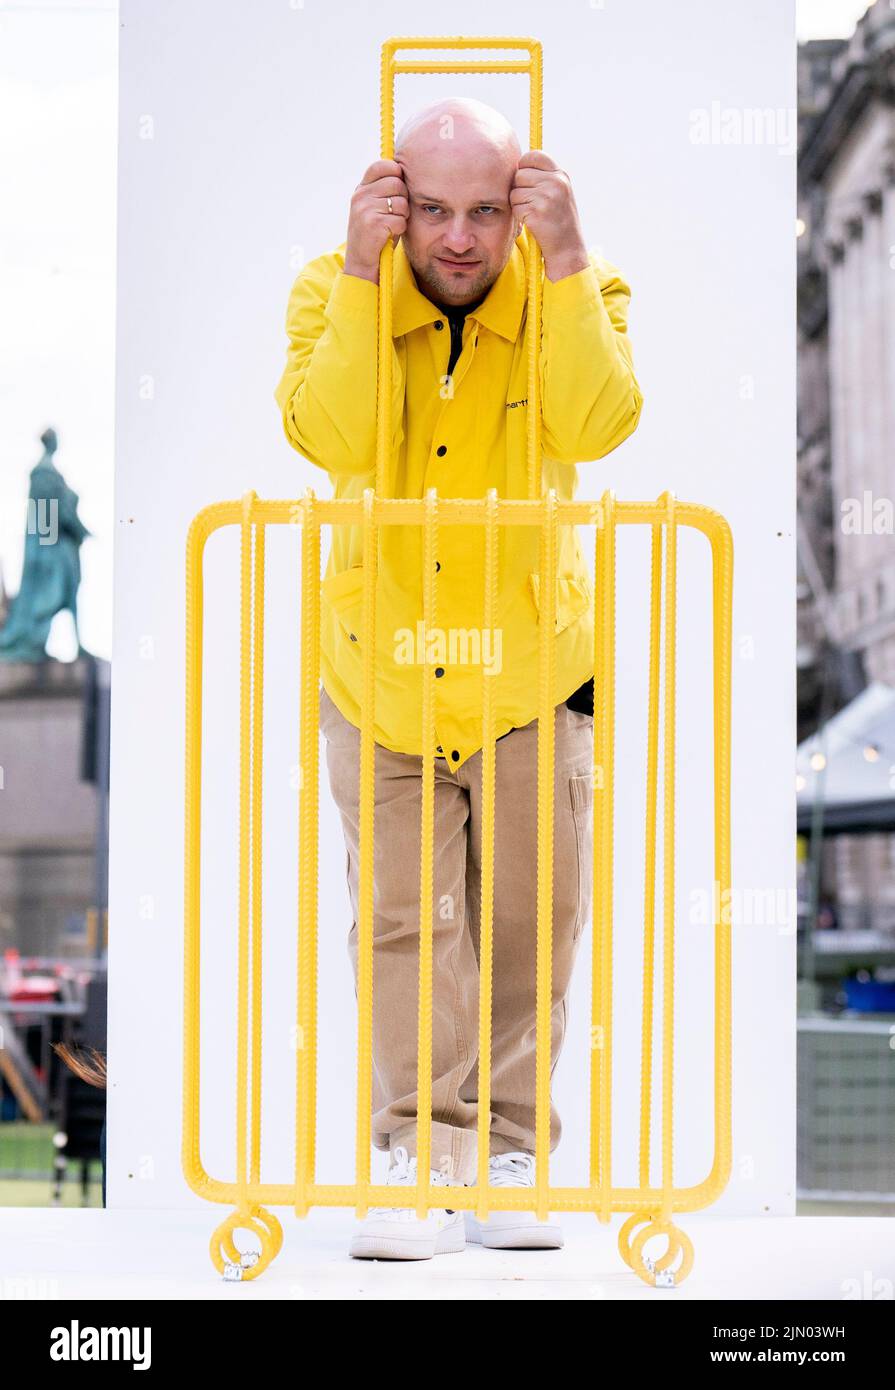 L'artista Kostya Benkovich, fuggito dalla Russia a causa della sua posizione anti-guerra, presenta la sua scultura The Suitcase durante una chiamata fotografica ai Giardini dell'Assemblea, Edimburgo. Data foto: Lunedì 8 agosto 2022. Foto Stock